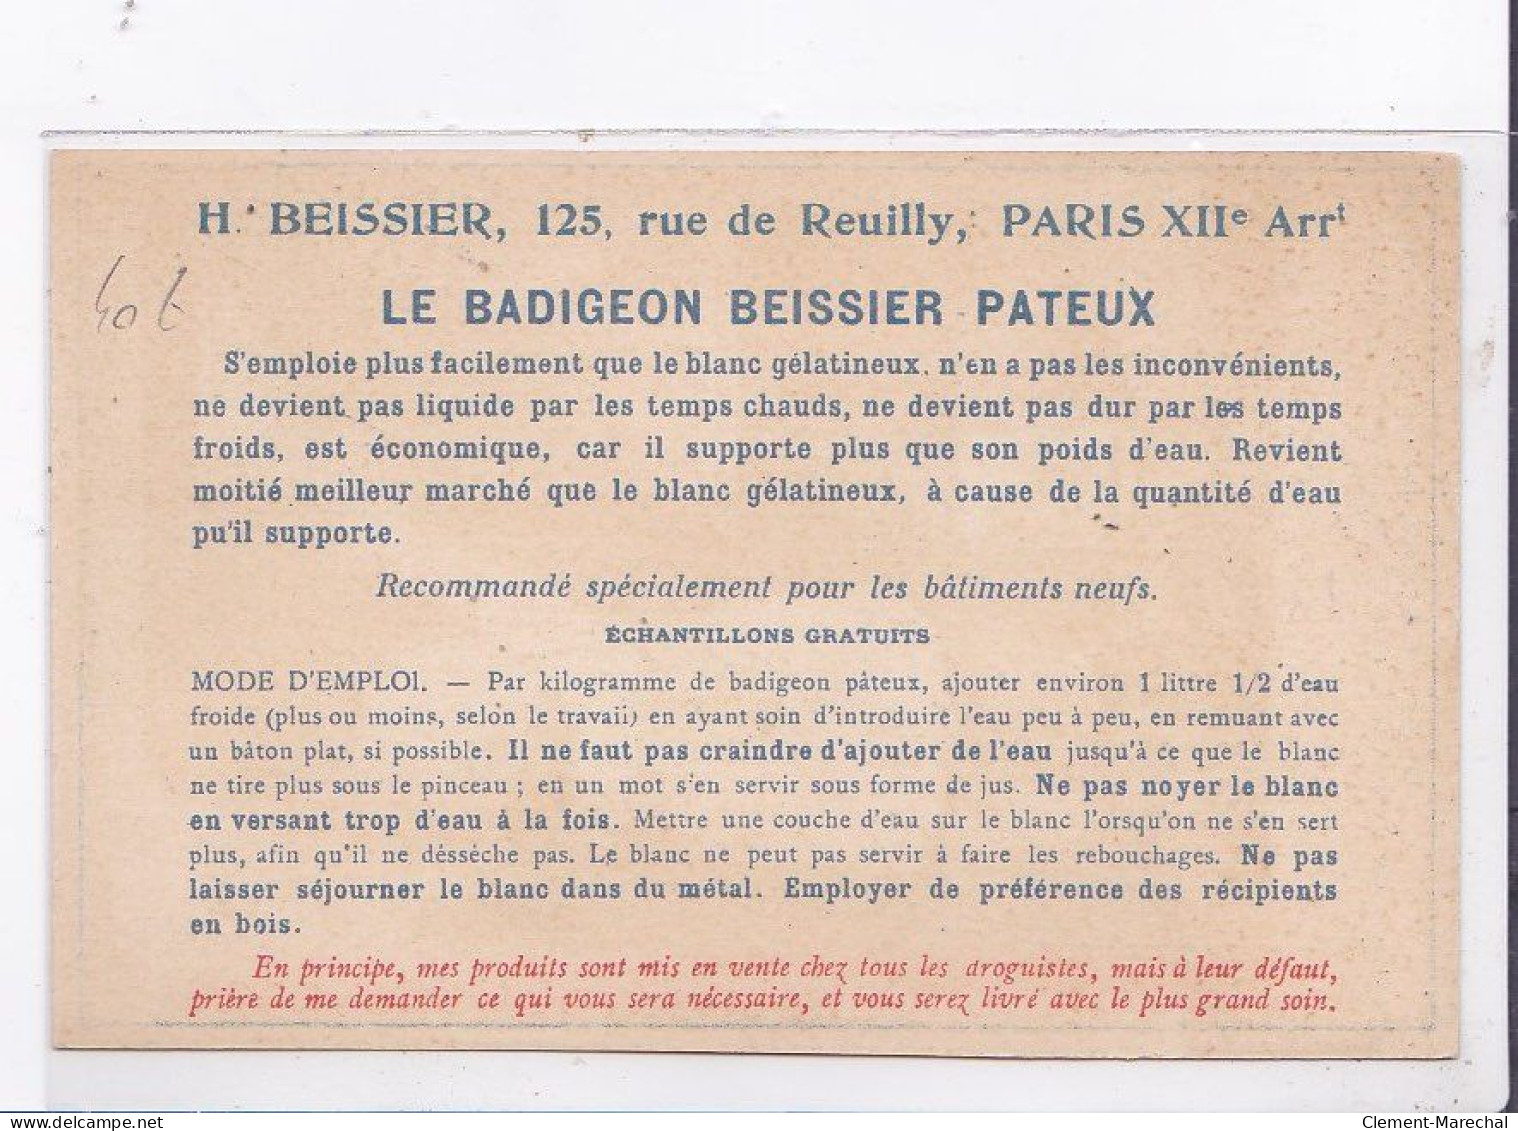 PUBLICITE : La Chauleine BESSIER (batiment - BTP) - Très Bon état - Publicité